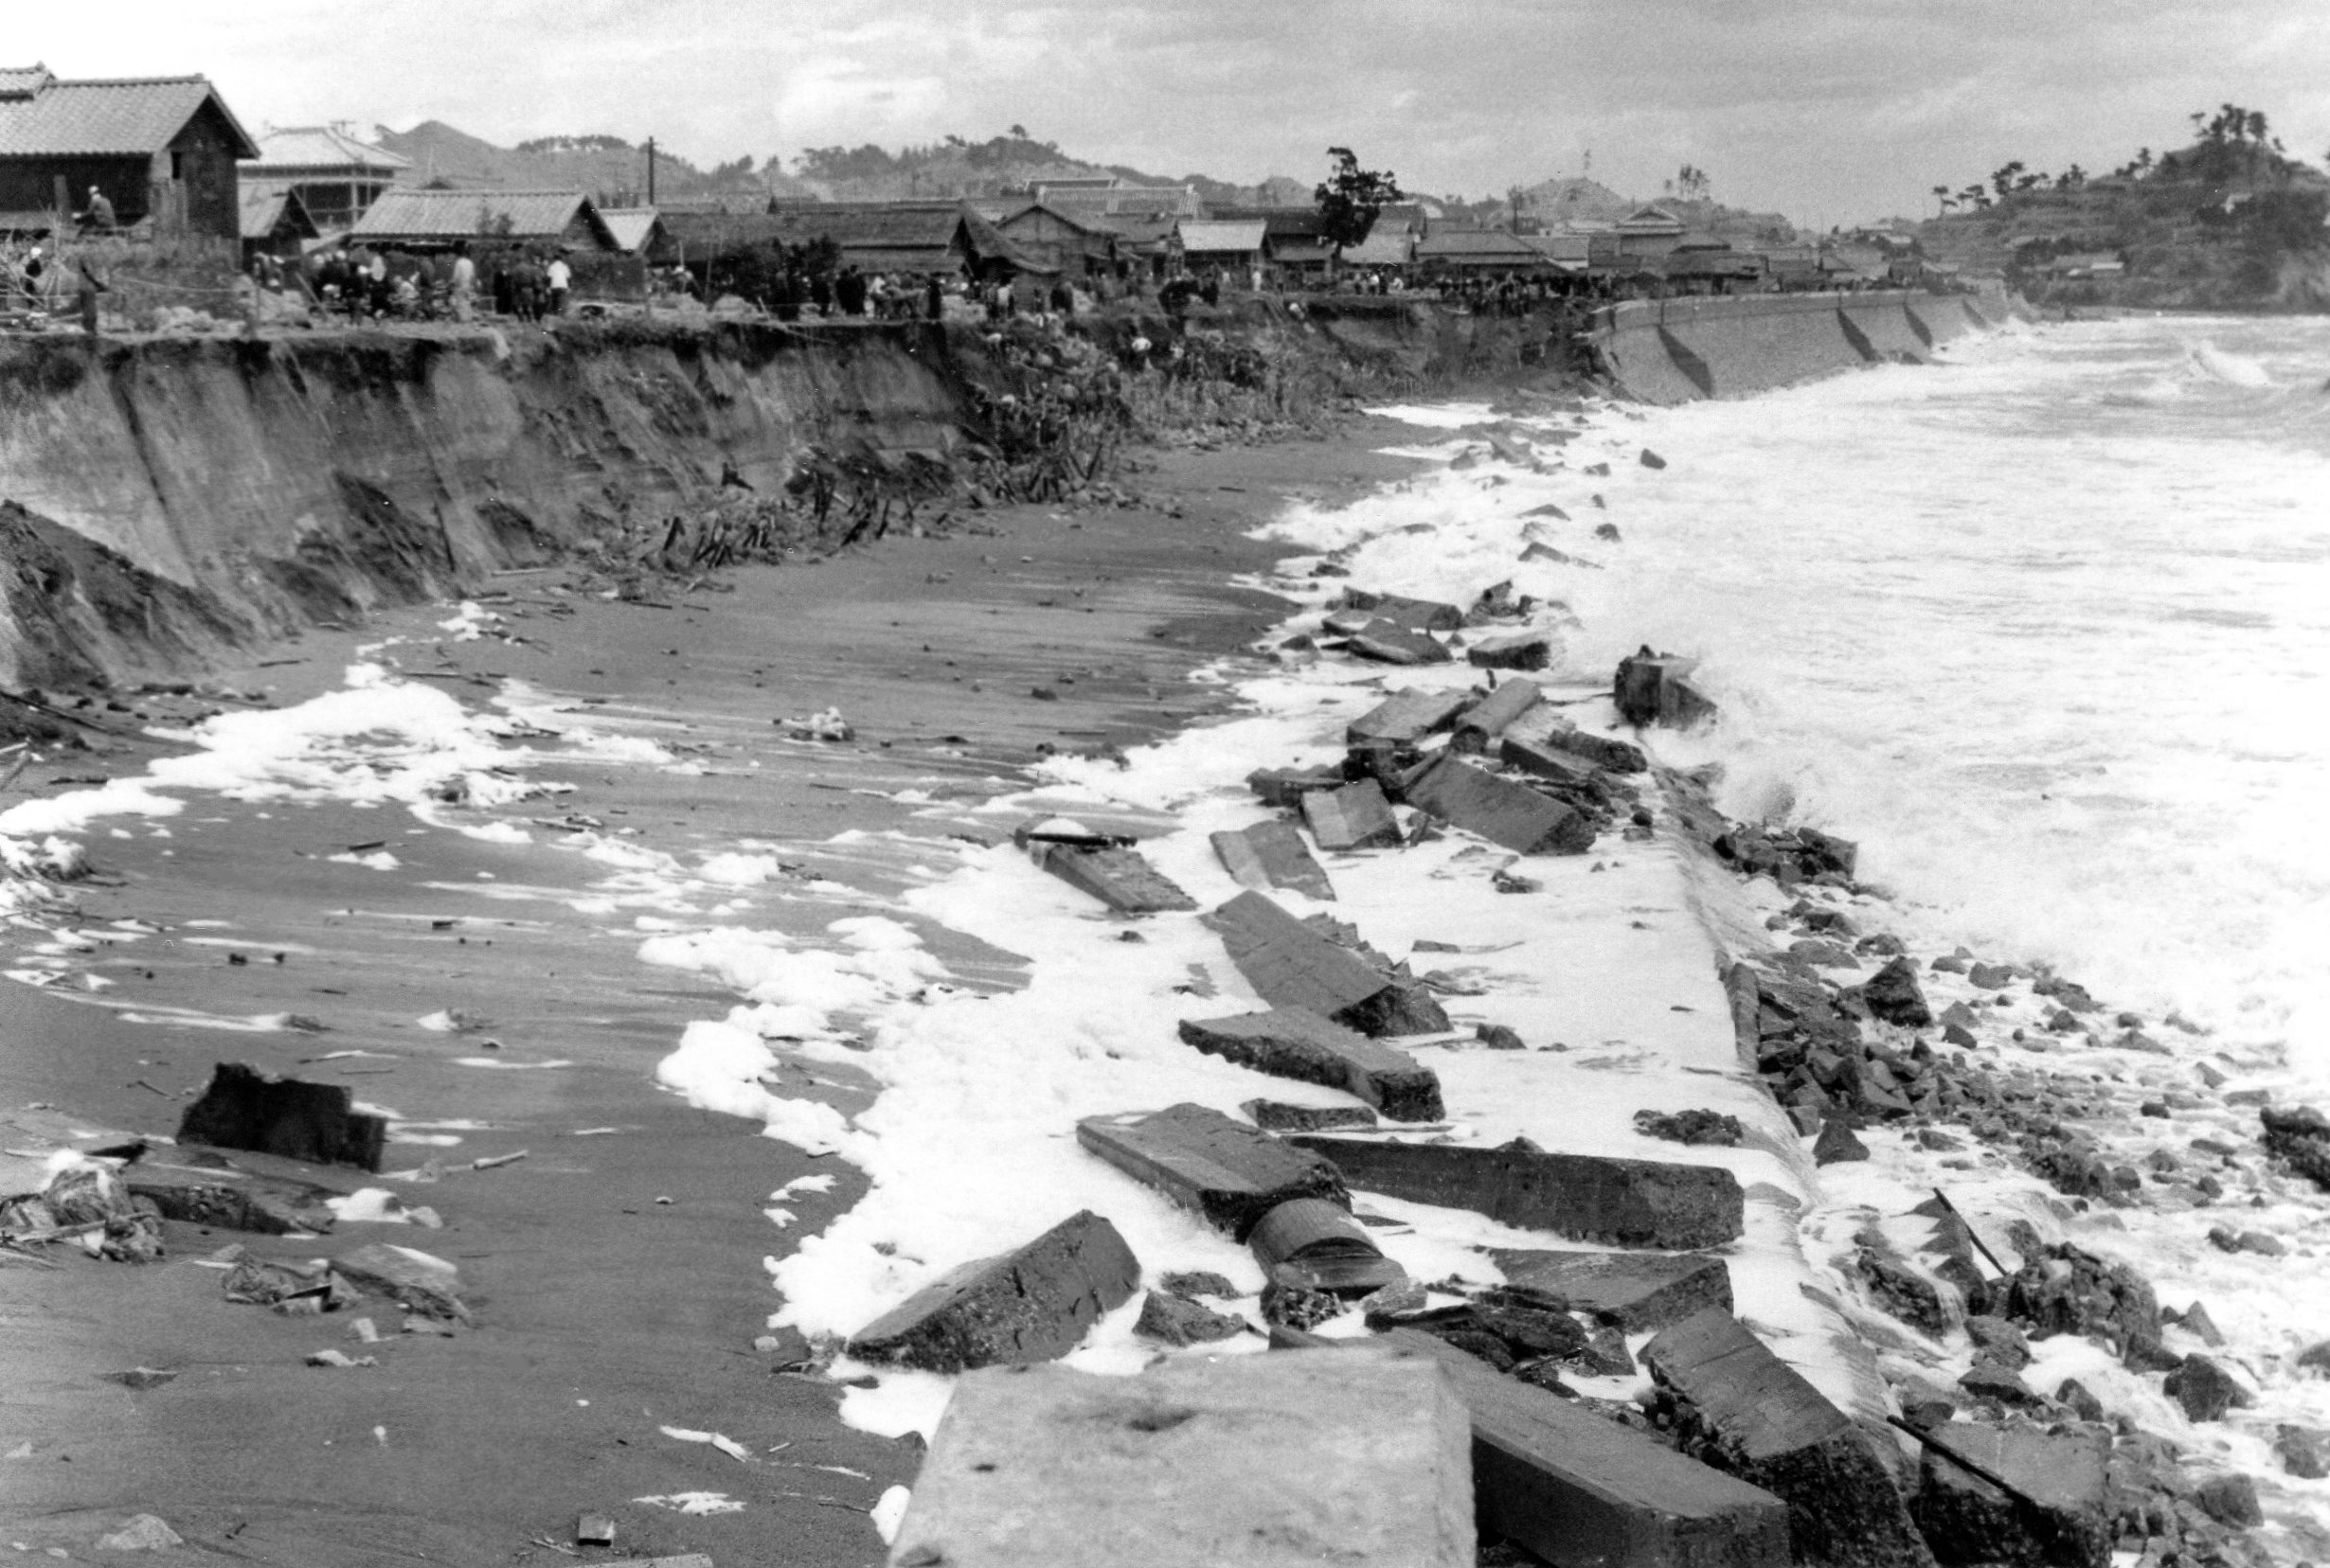 11 高潮に襲われた久之浜海岸と復旧作業を北方に向かって見る（昭和32年、志賀親氏撮影）